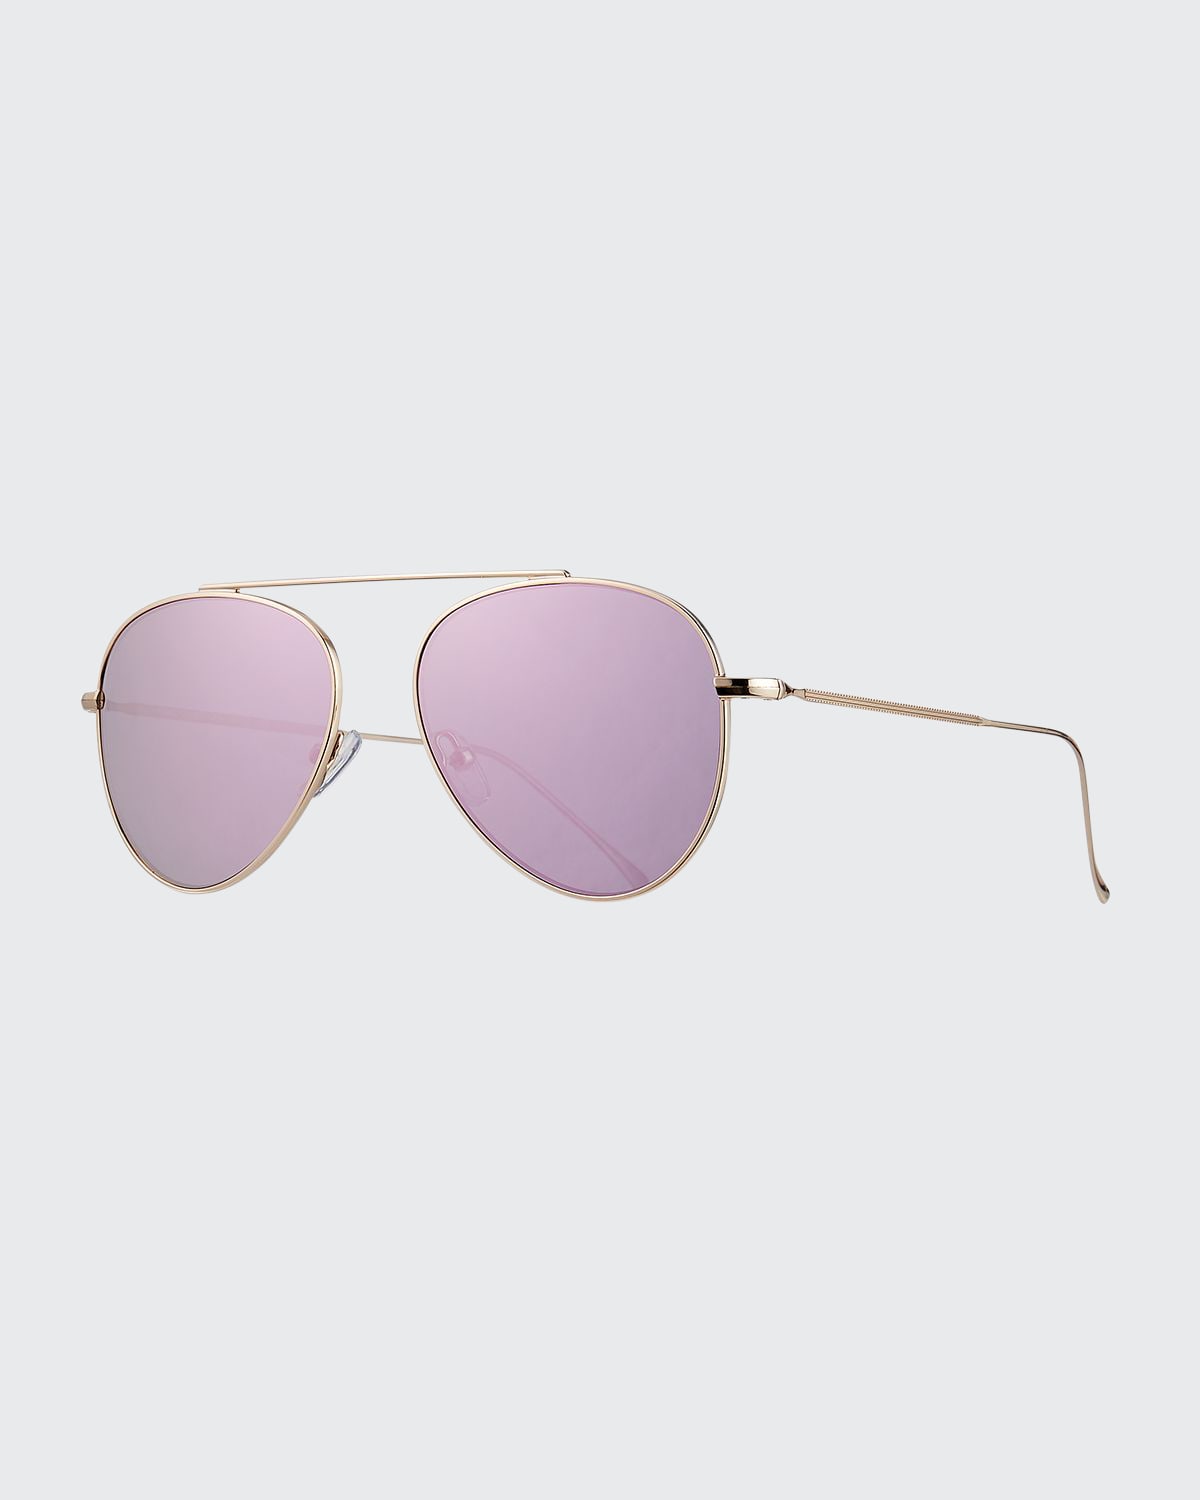 Dorchester Mirrored Aviator Sunglasses